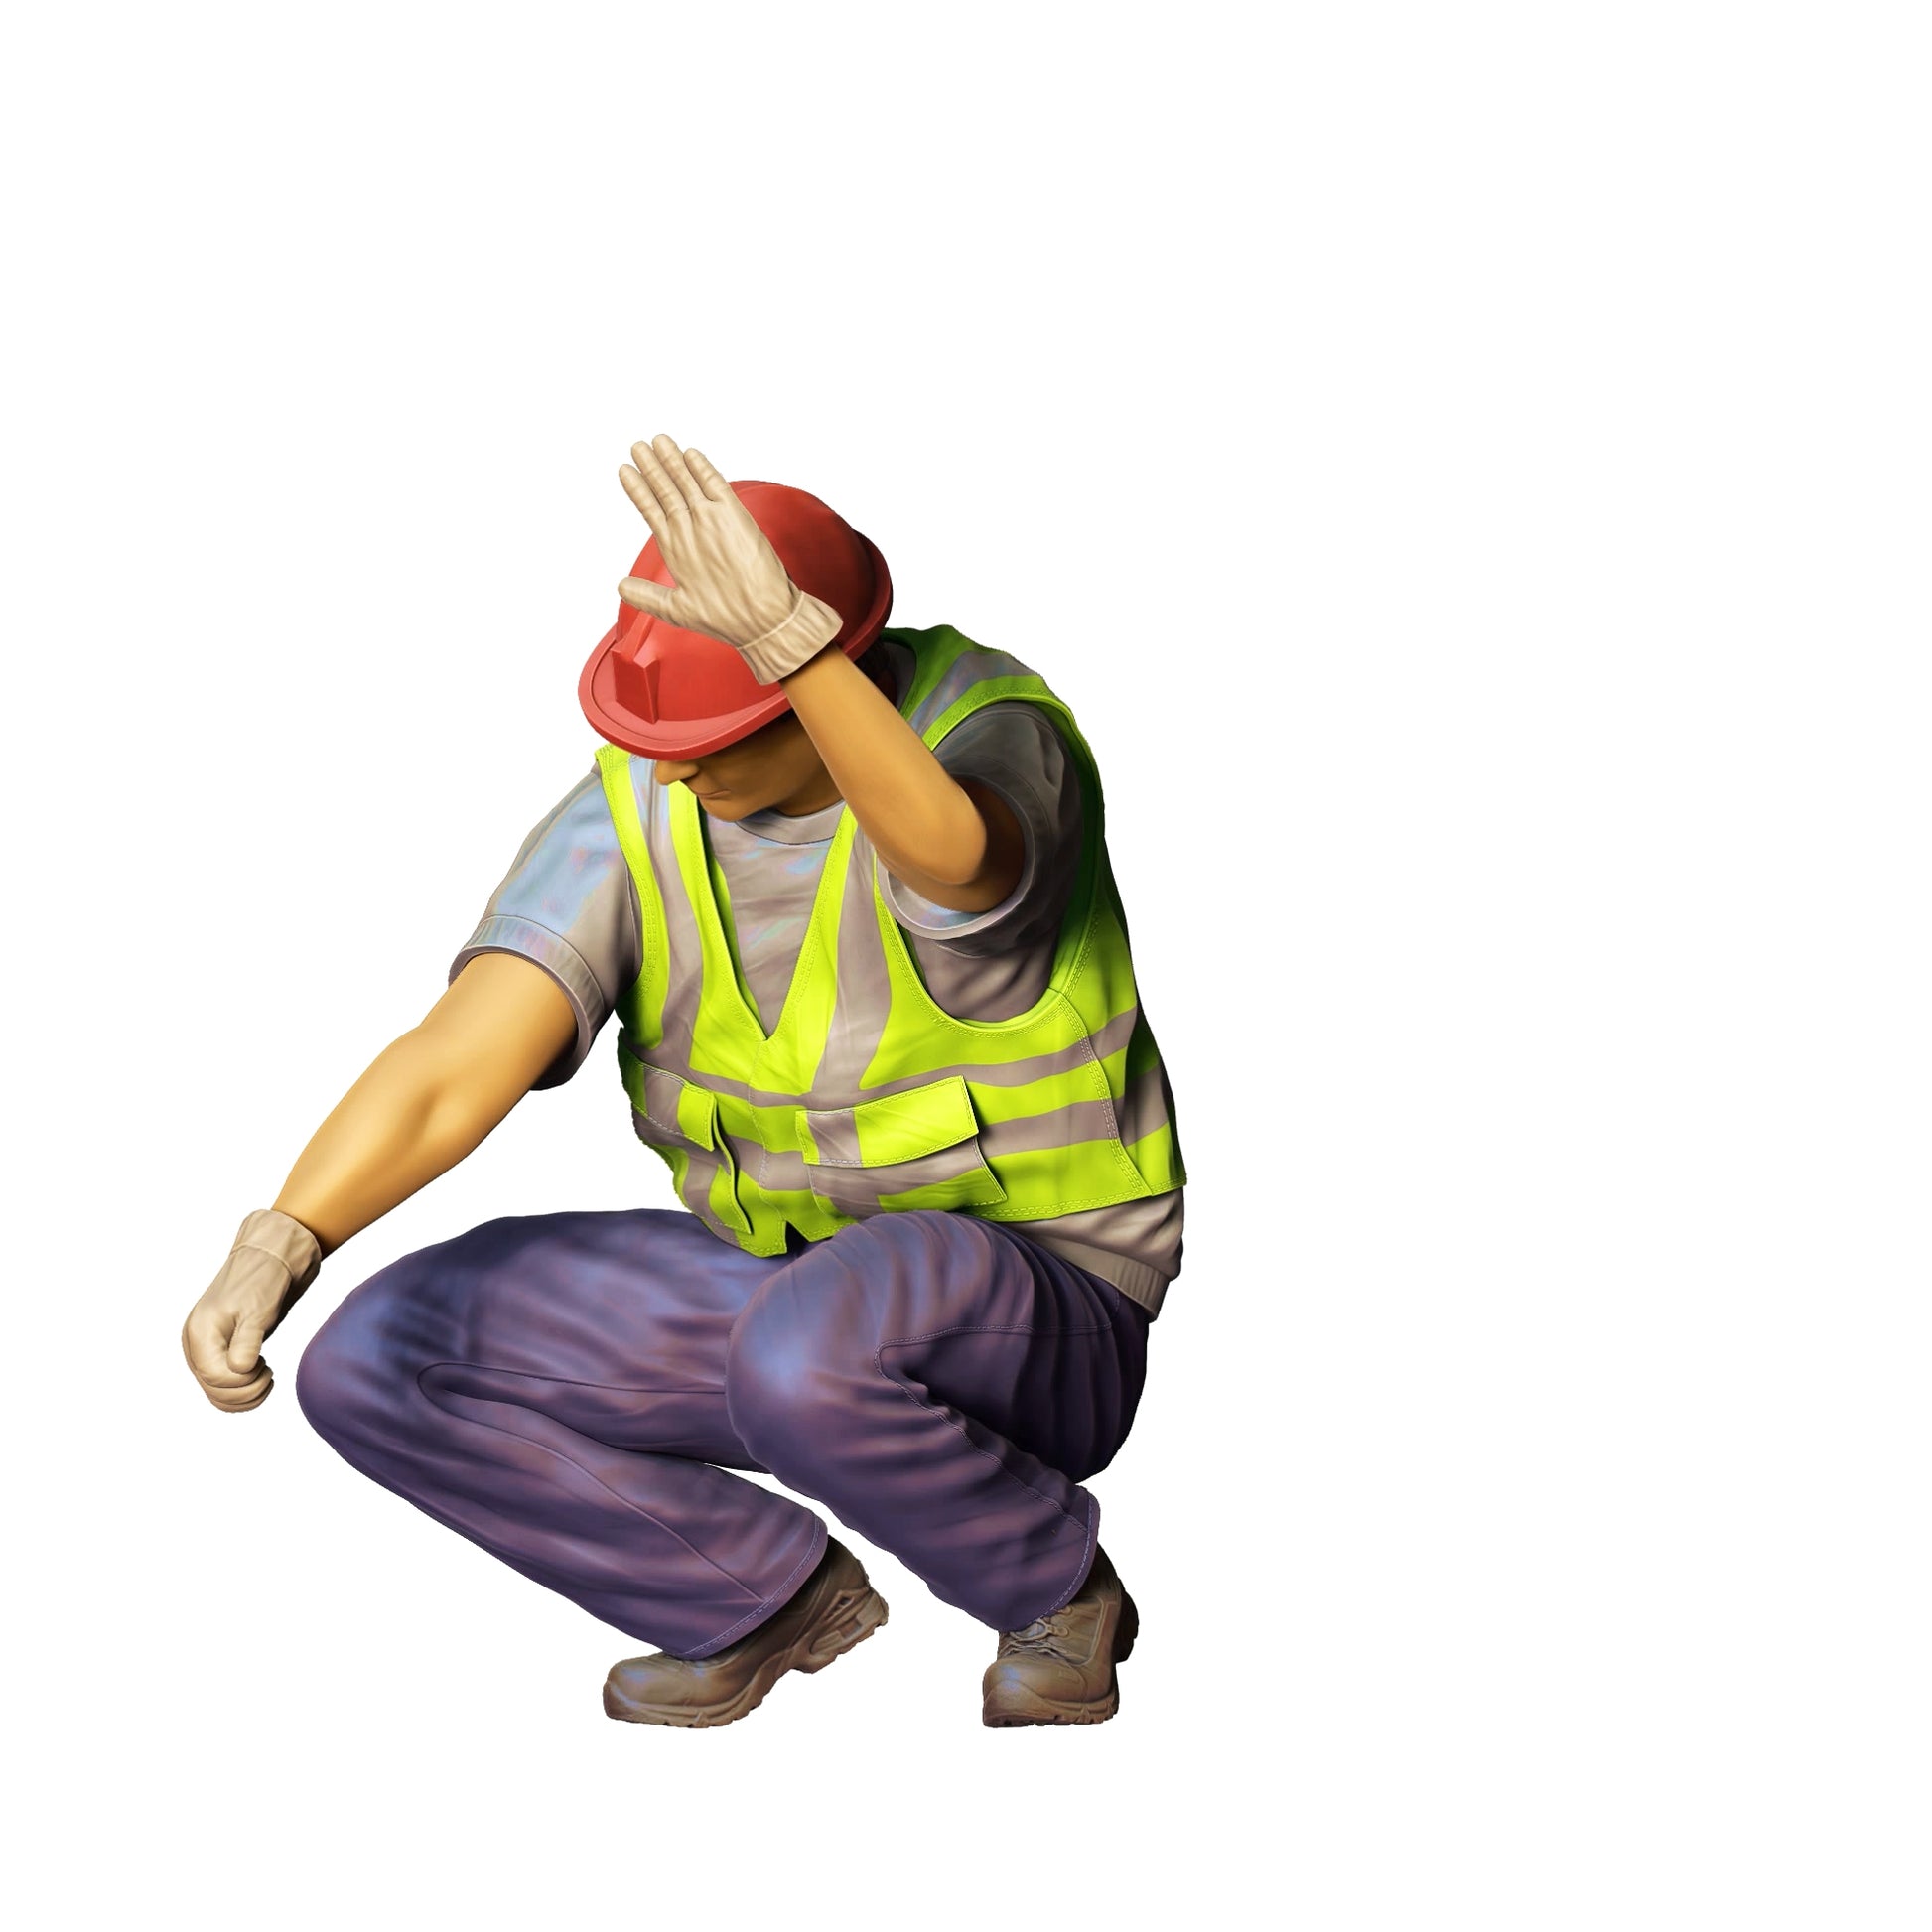 Produktfoto  0: Straßenarbeiter kniend mit Helm